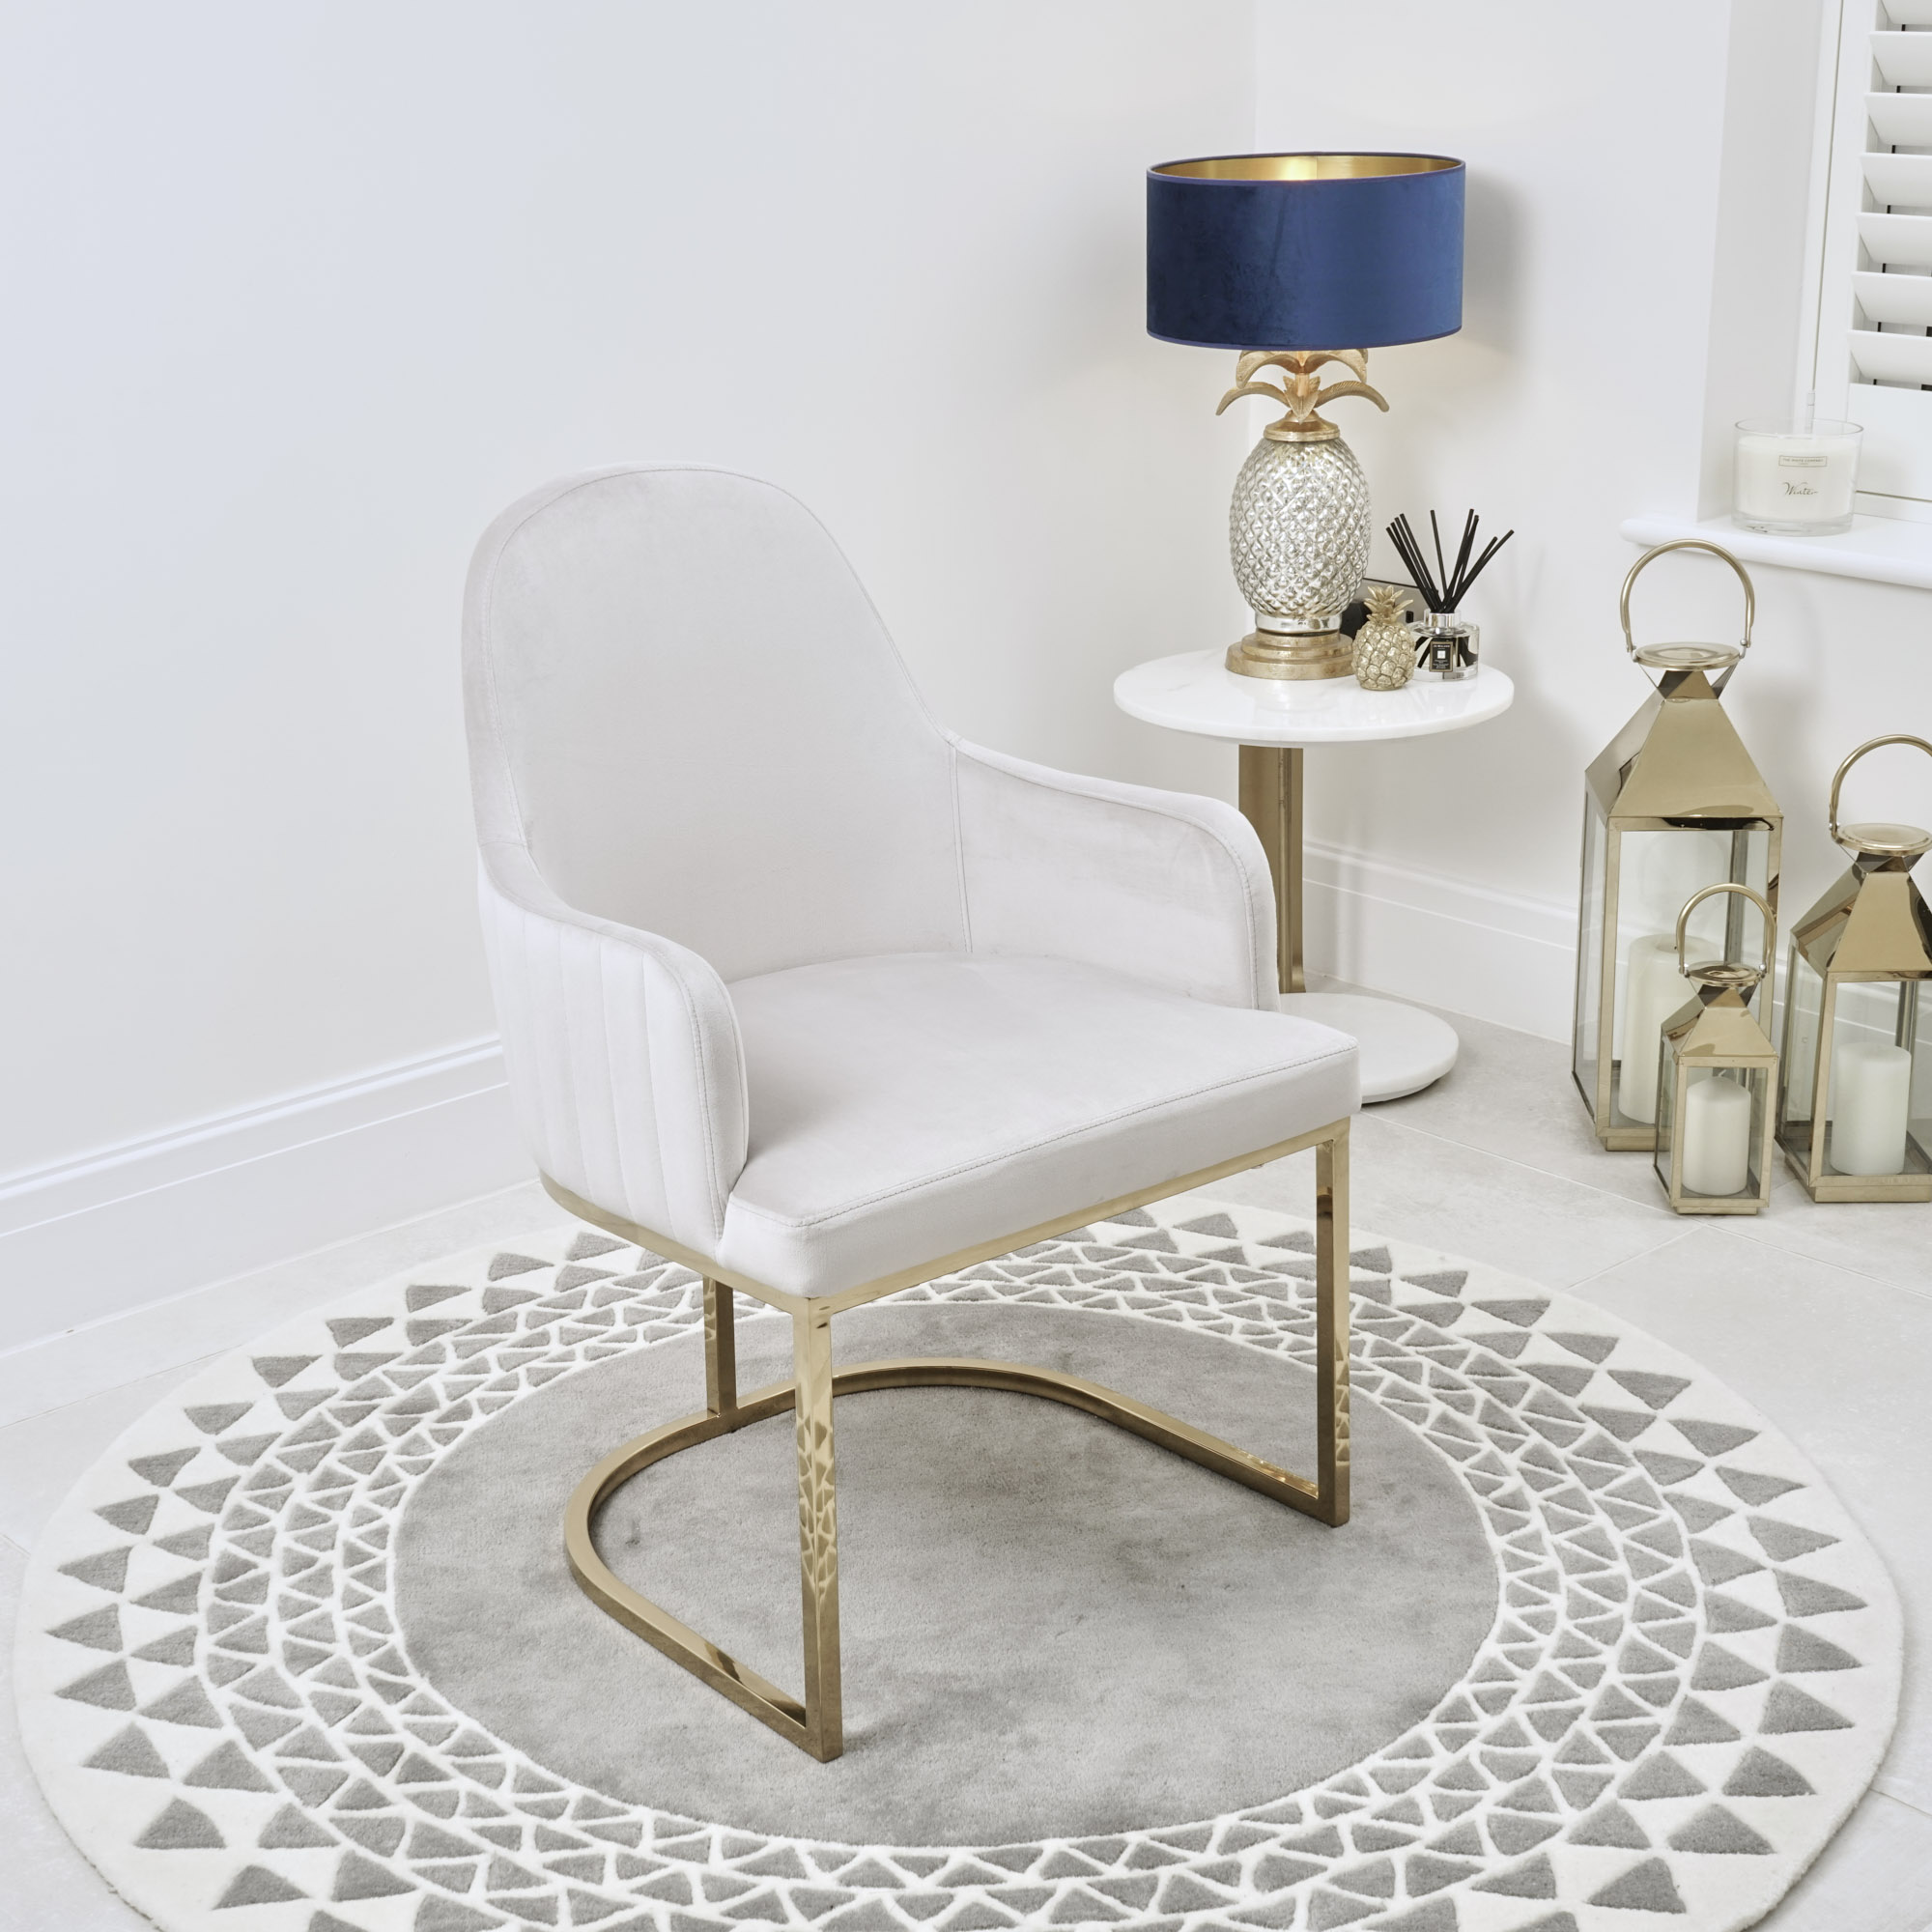 Barcelona Light Grey Brushed Velvet Upholstered Dining Chair – Golden Stainless Steel Base